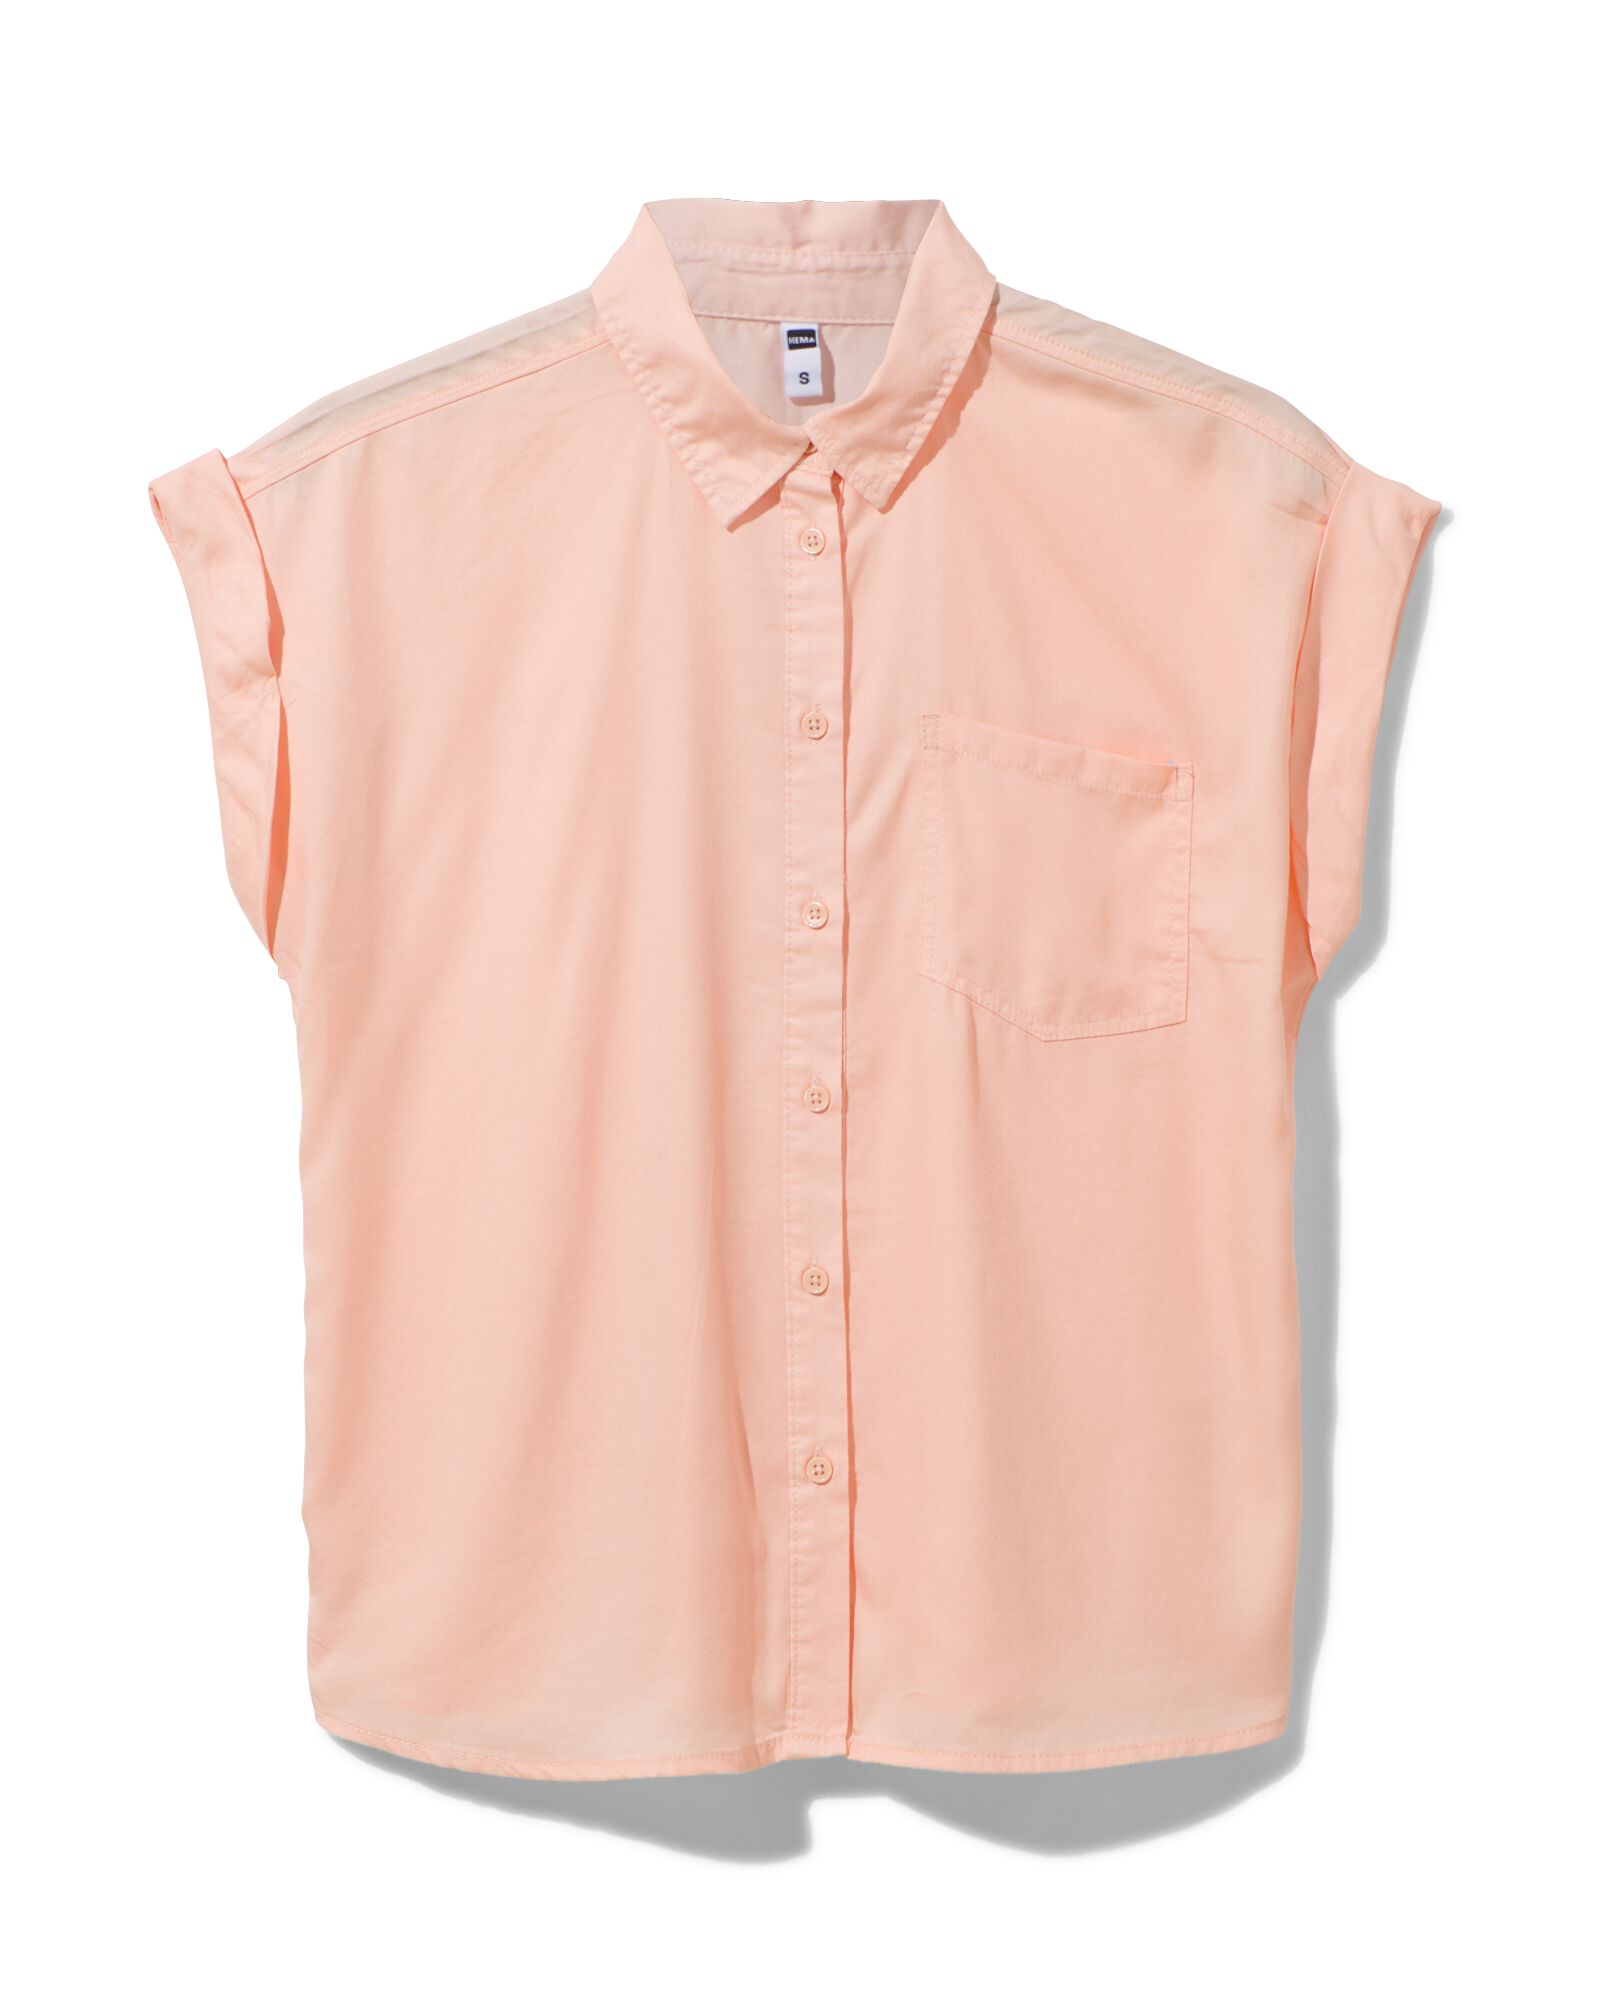 dames blouse Tina roze - 1000031151 - HEMA